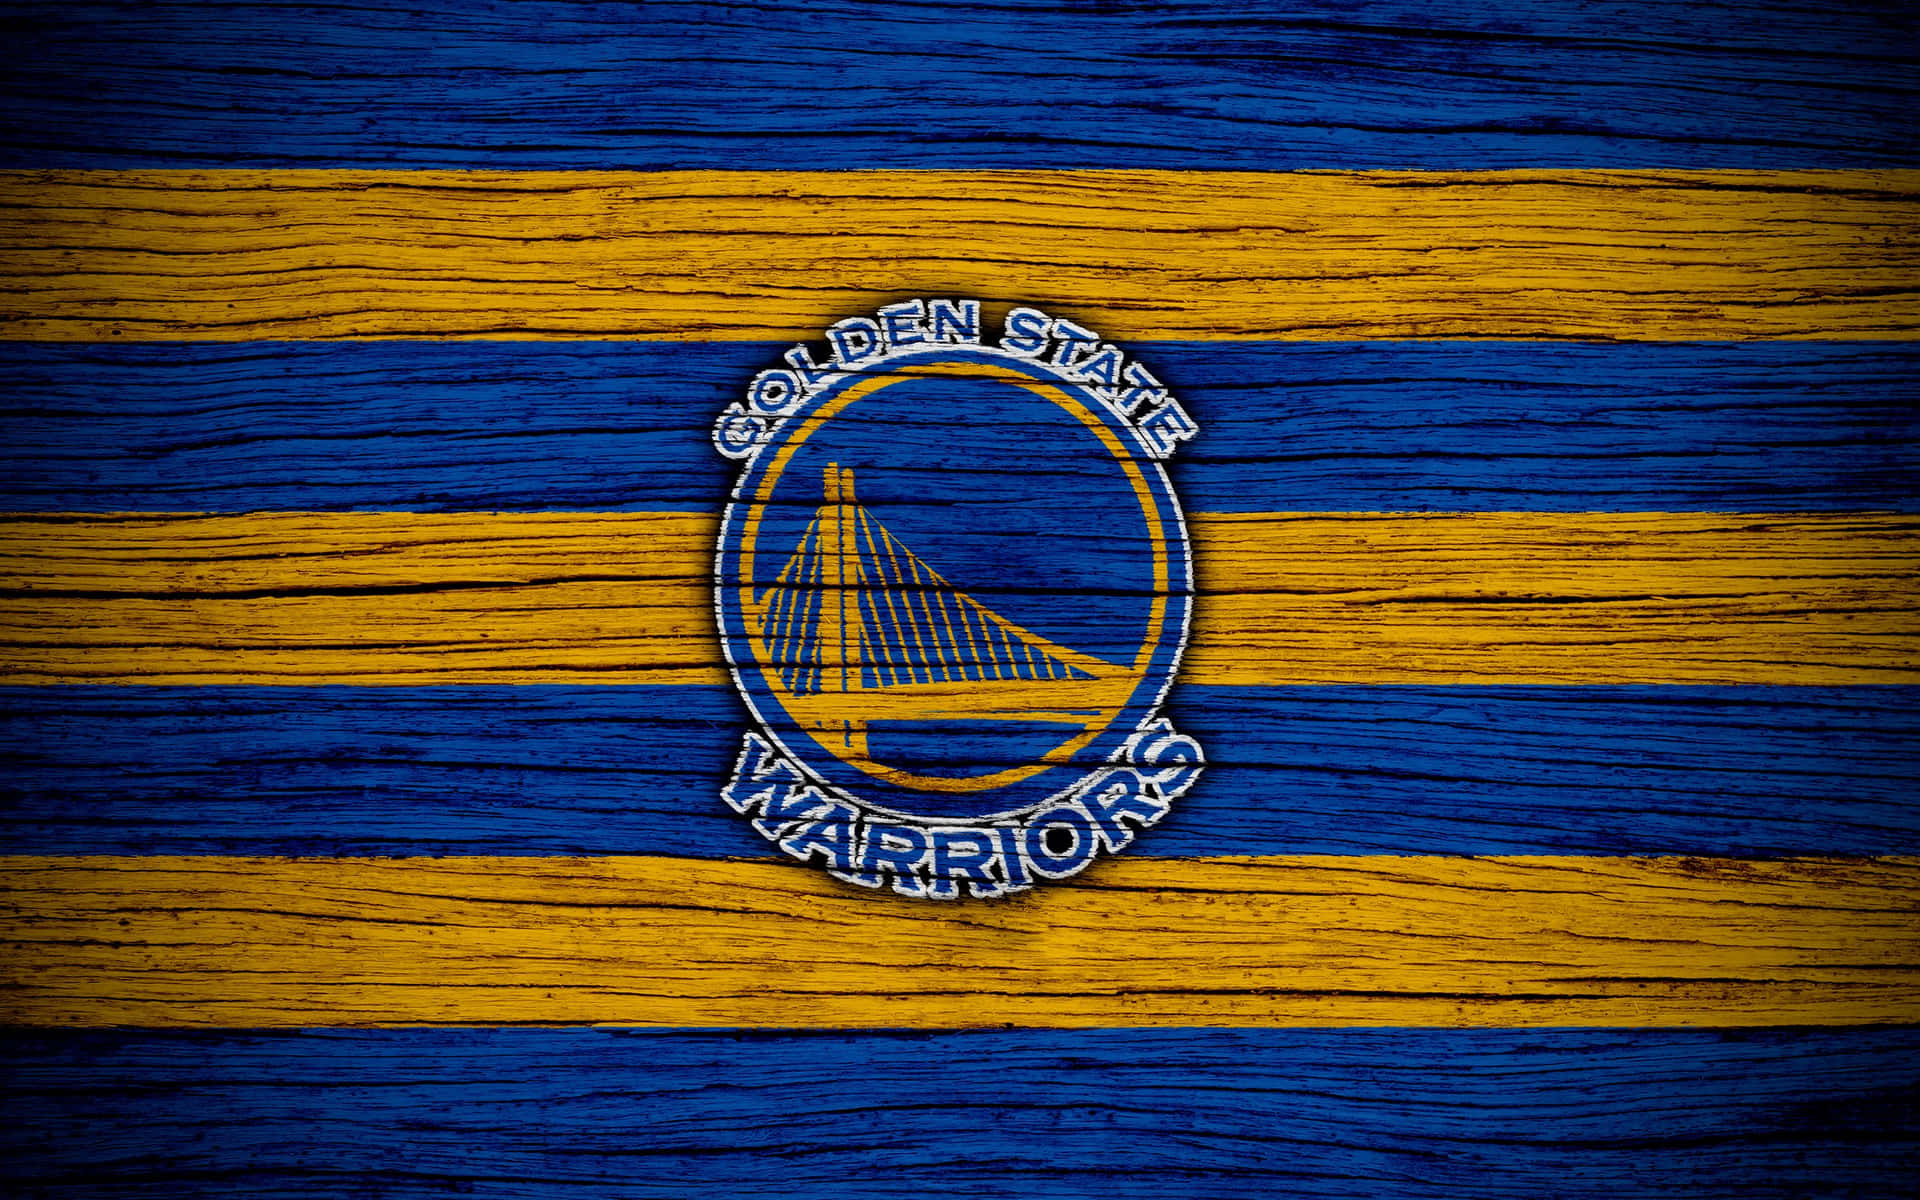 Logotipode Golden State Warriors Sobre Superficie De Madera A Rayas. Fondo de pantalla